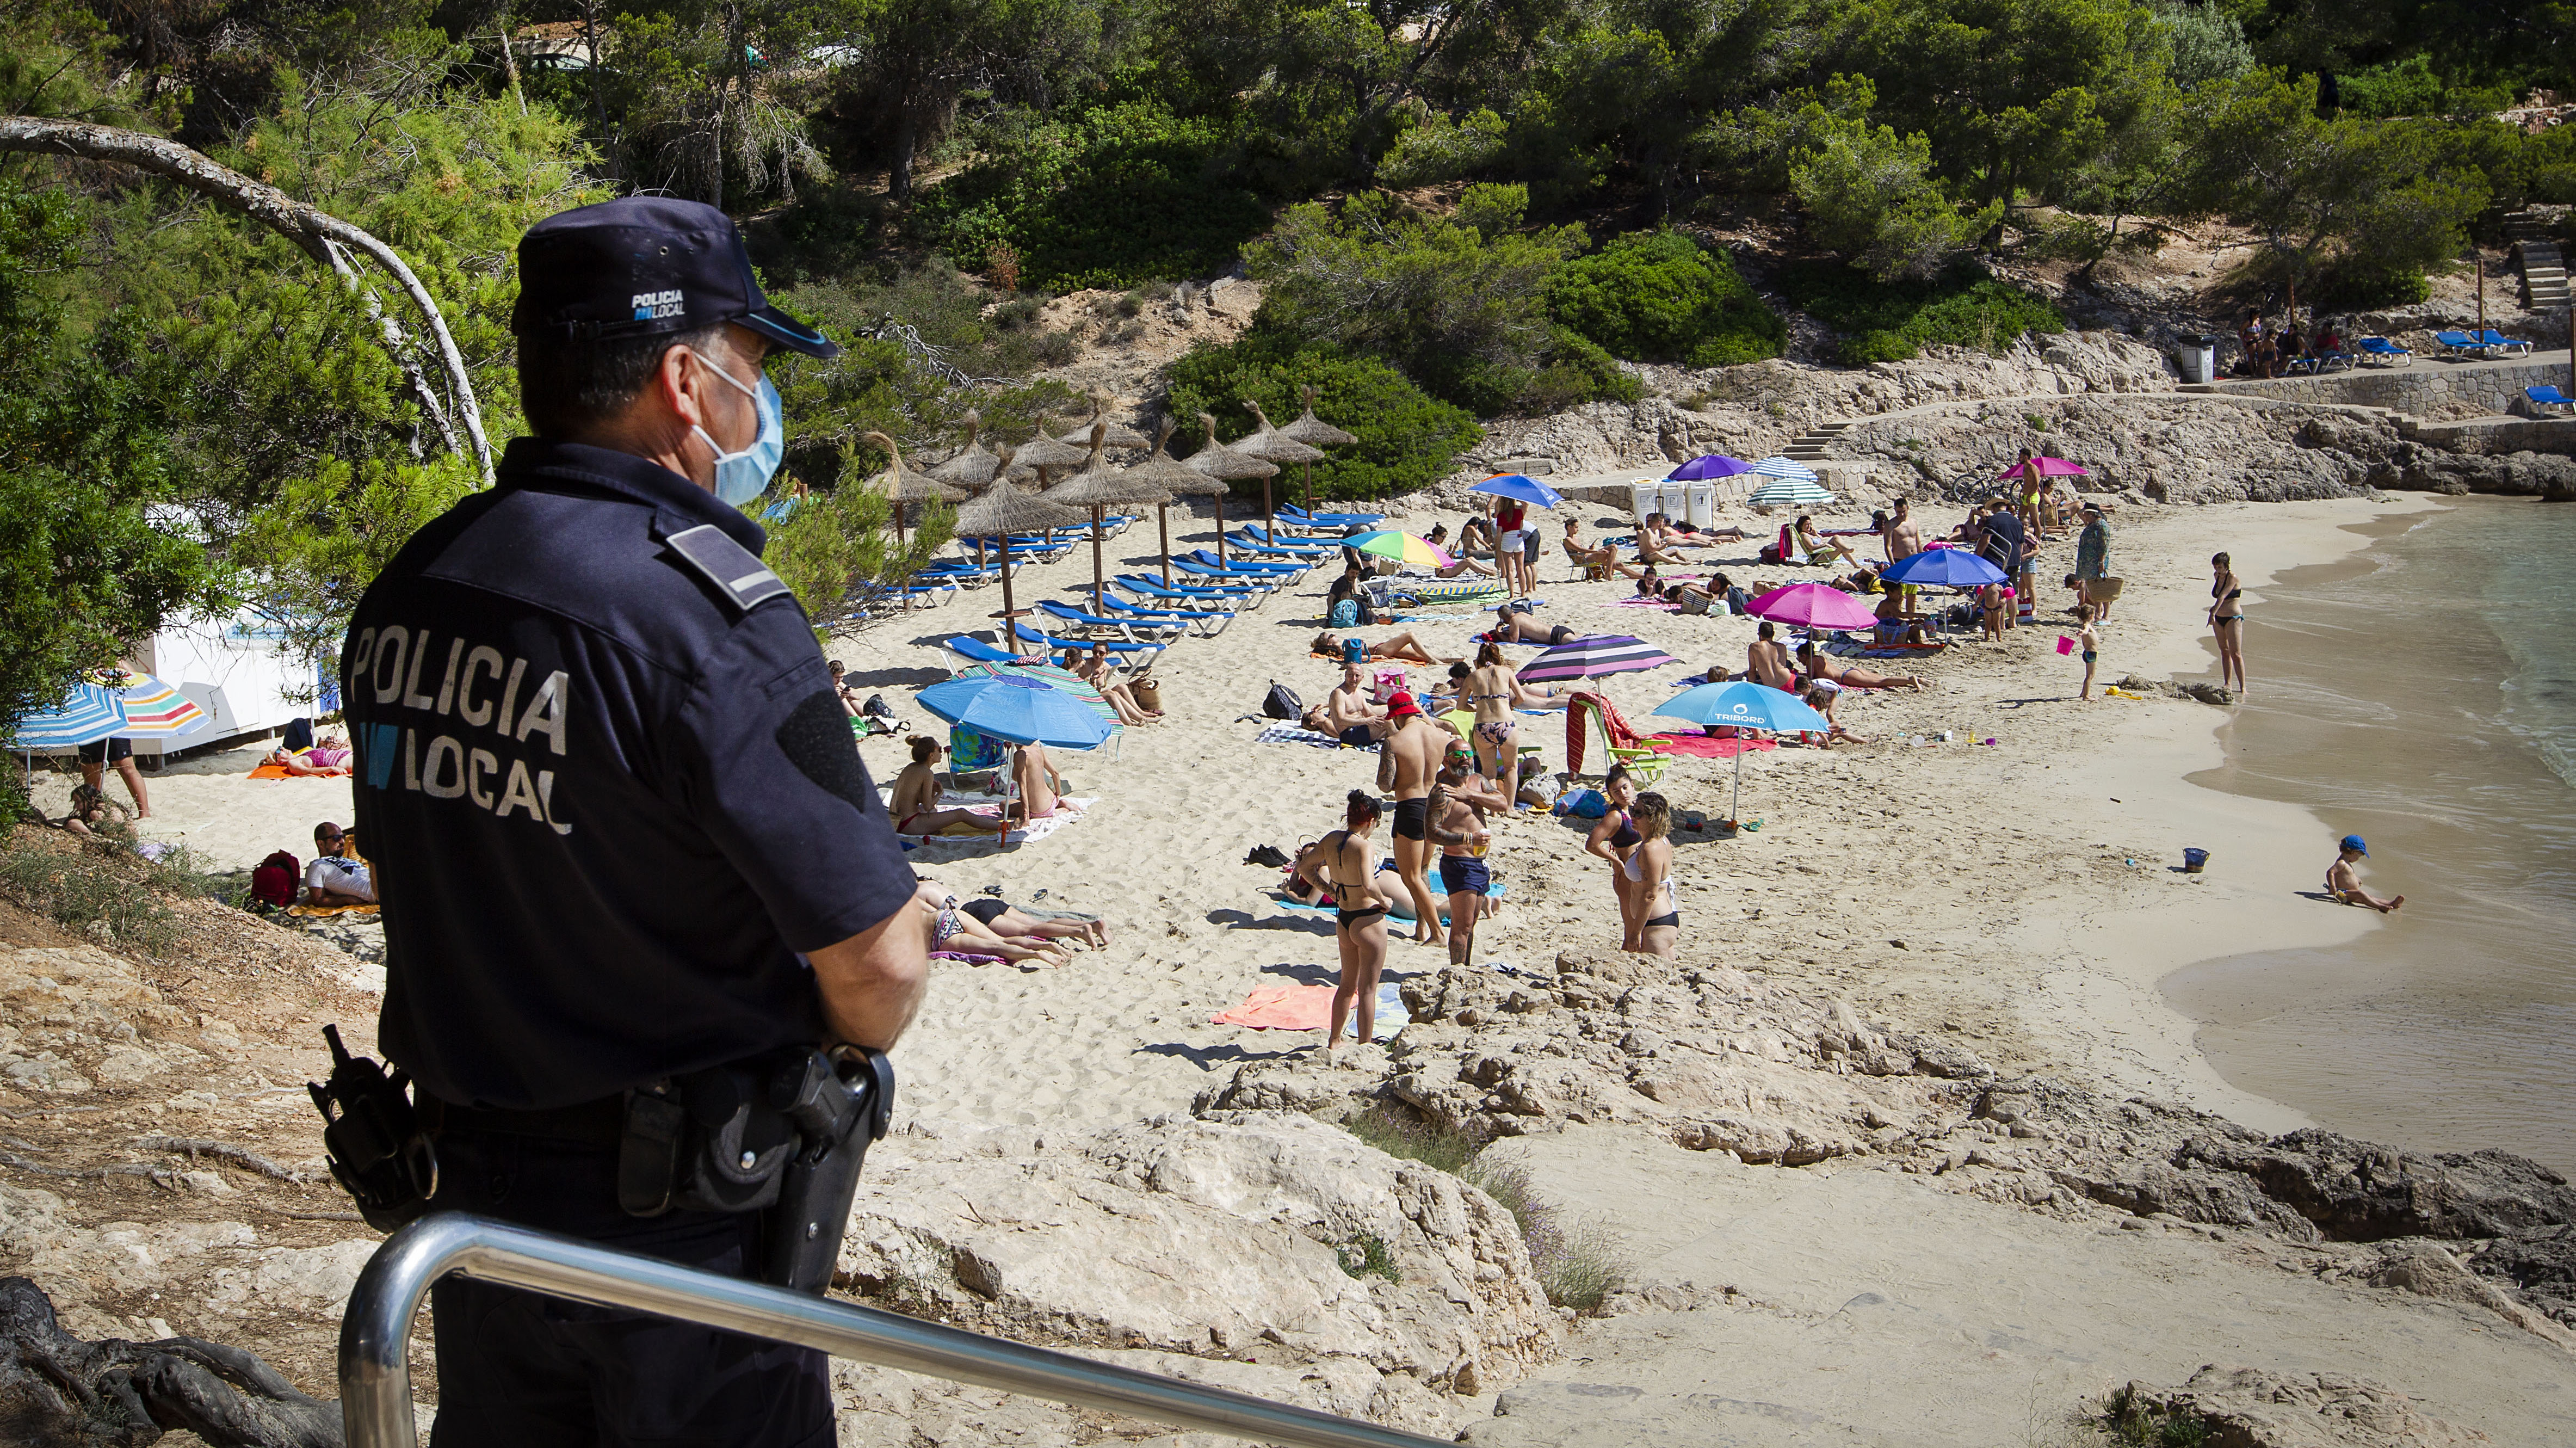 La policía local observa a las personas tomando sol en la playa de Cala Comtesa en Calvia, en la isla de Mallorca (AFP)